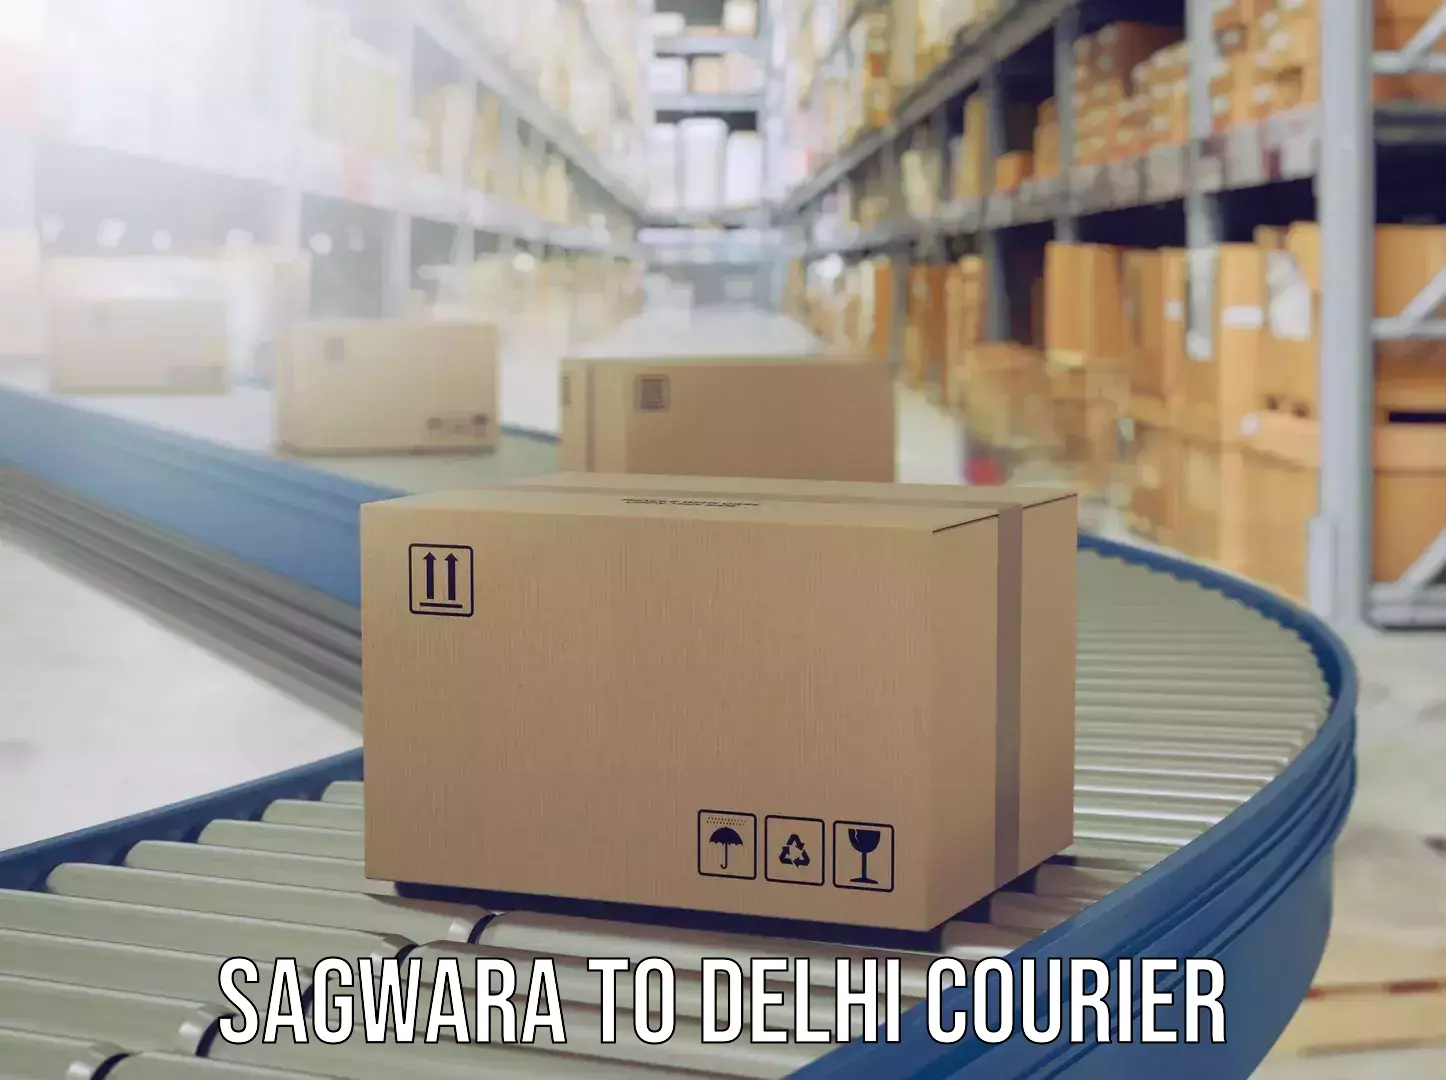 Luggage delivery app Sagwara to Delhi